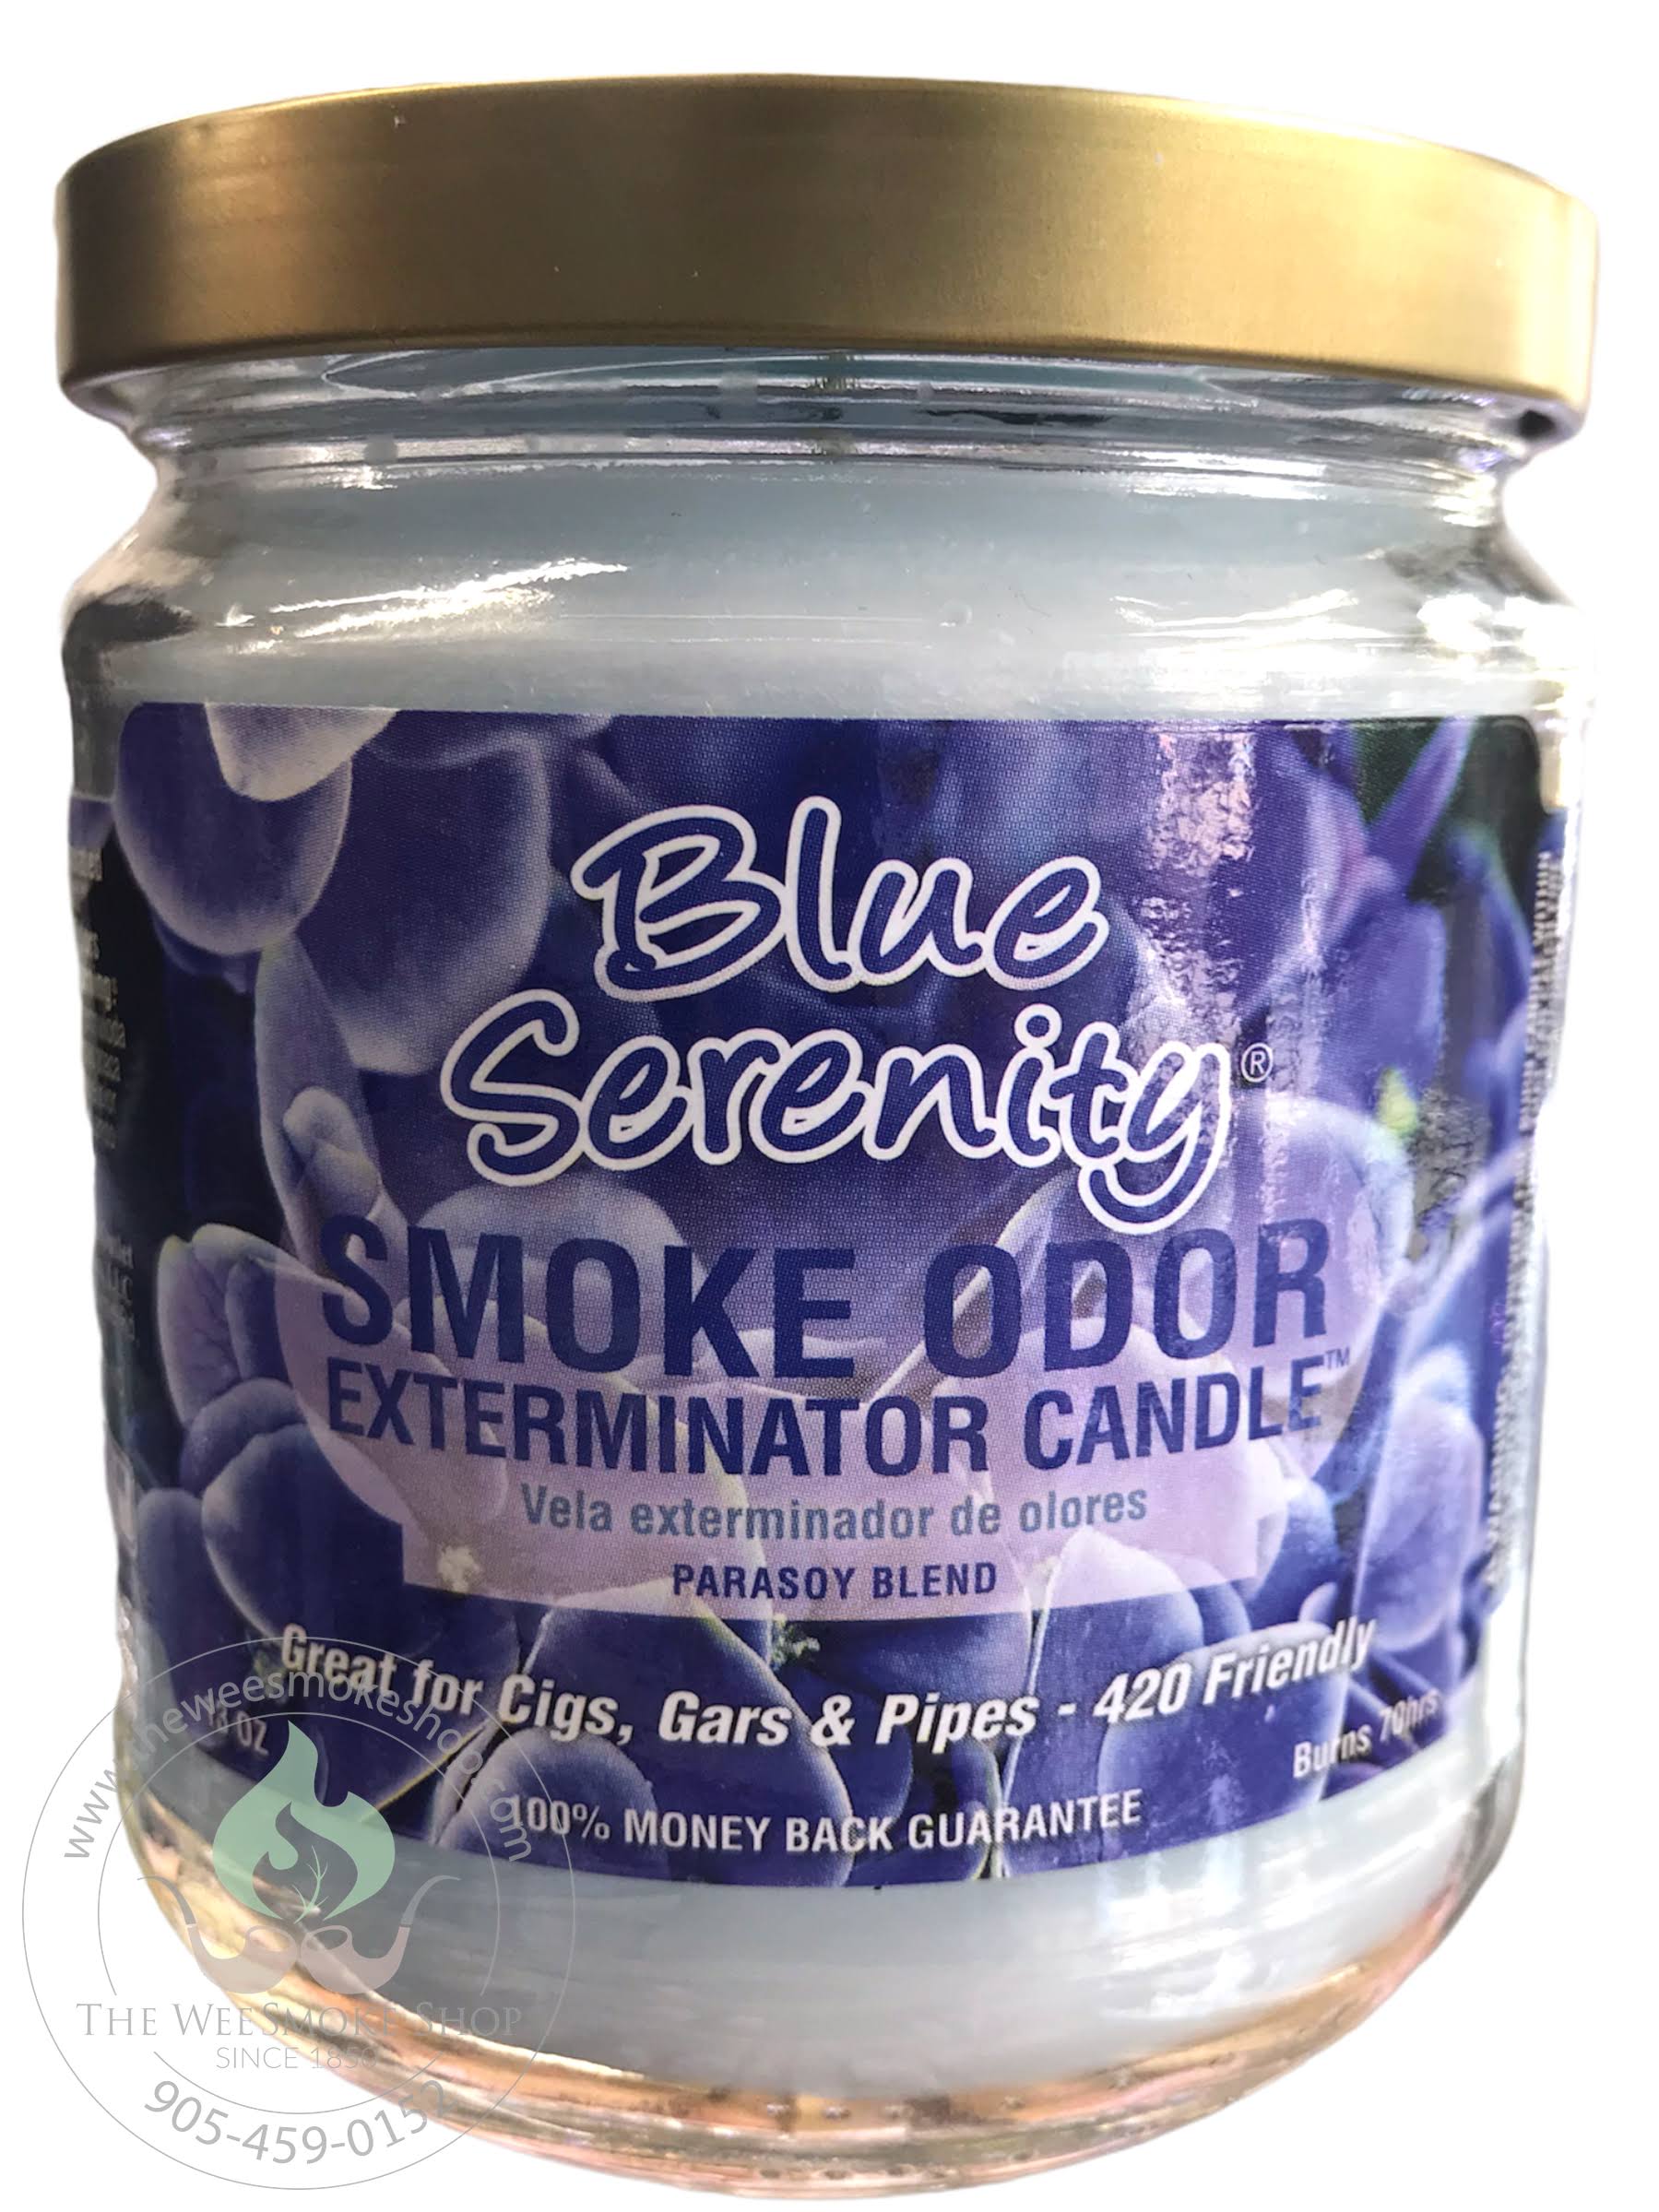 Smoke Odor Exterminator 13oz Jar Candle, Blue Serenity, 13 oz